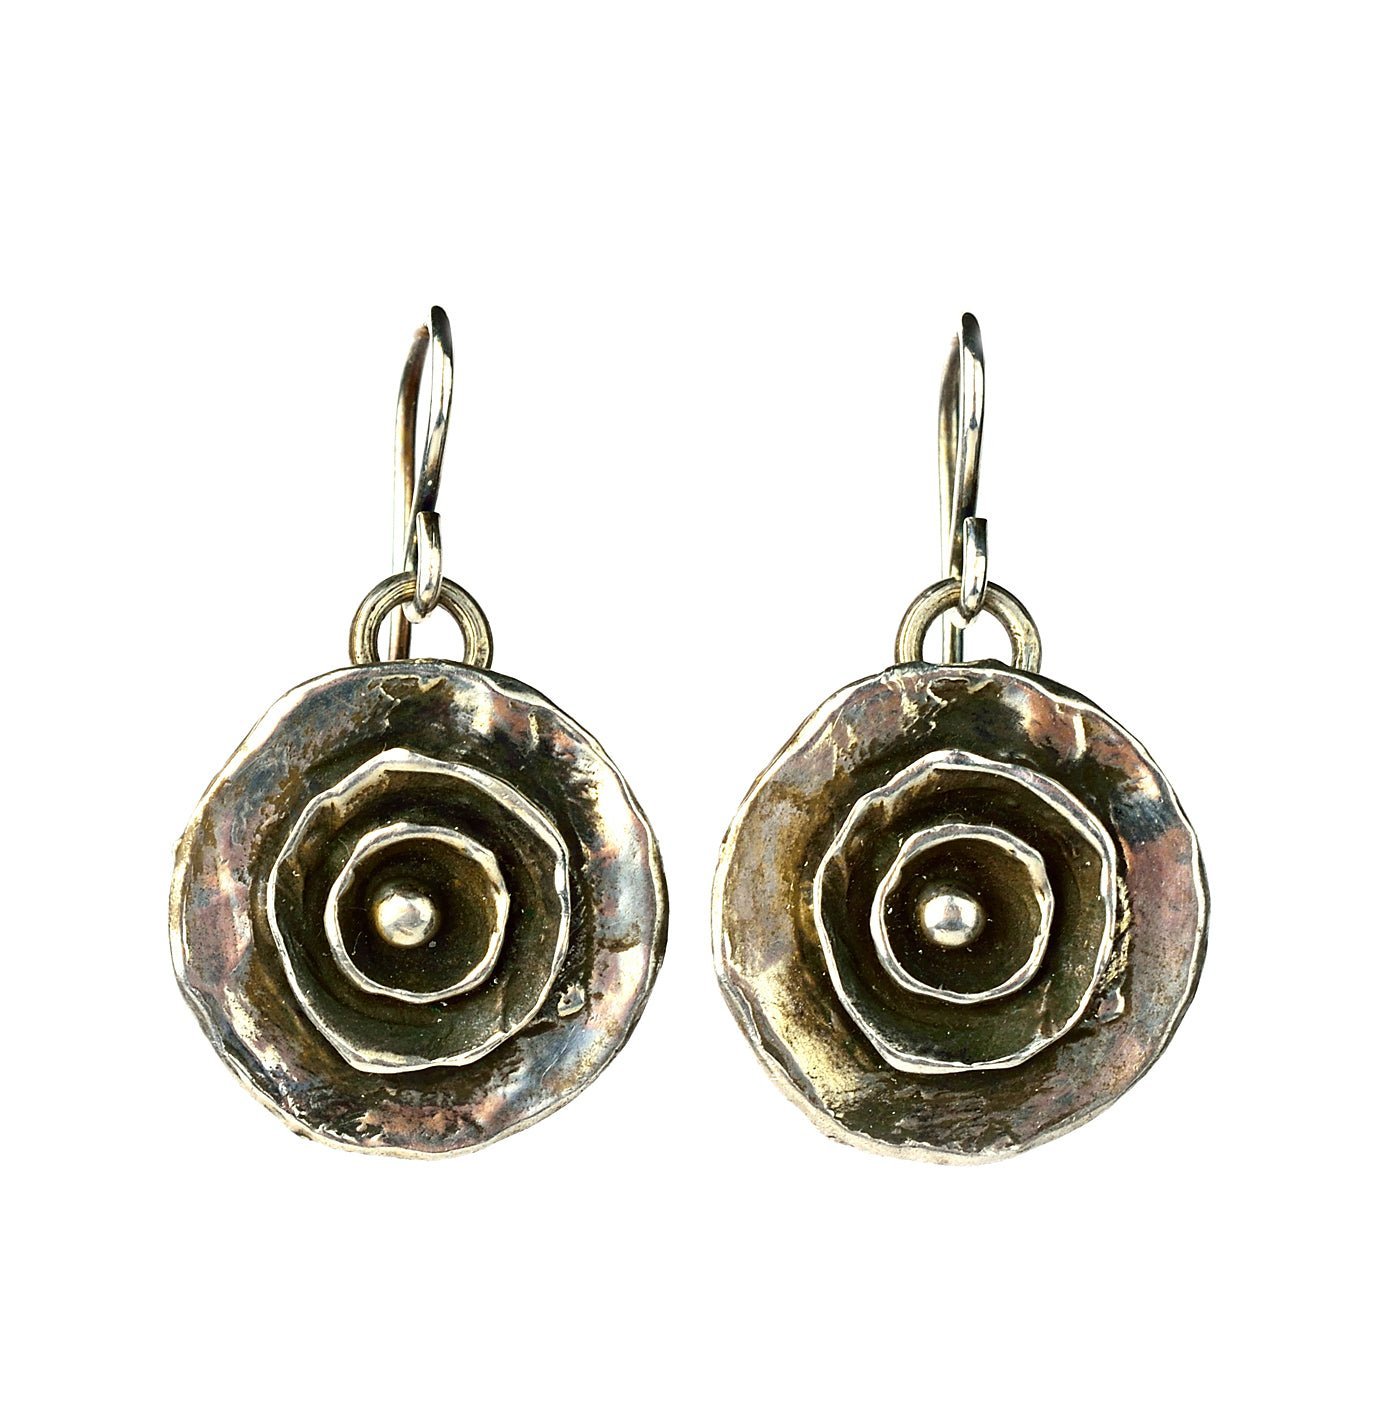 Spot On - Sterling Silver earrings by Donna Silvestri, On U Jewelry, Richmond, VA